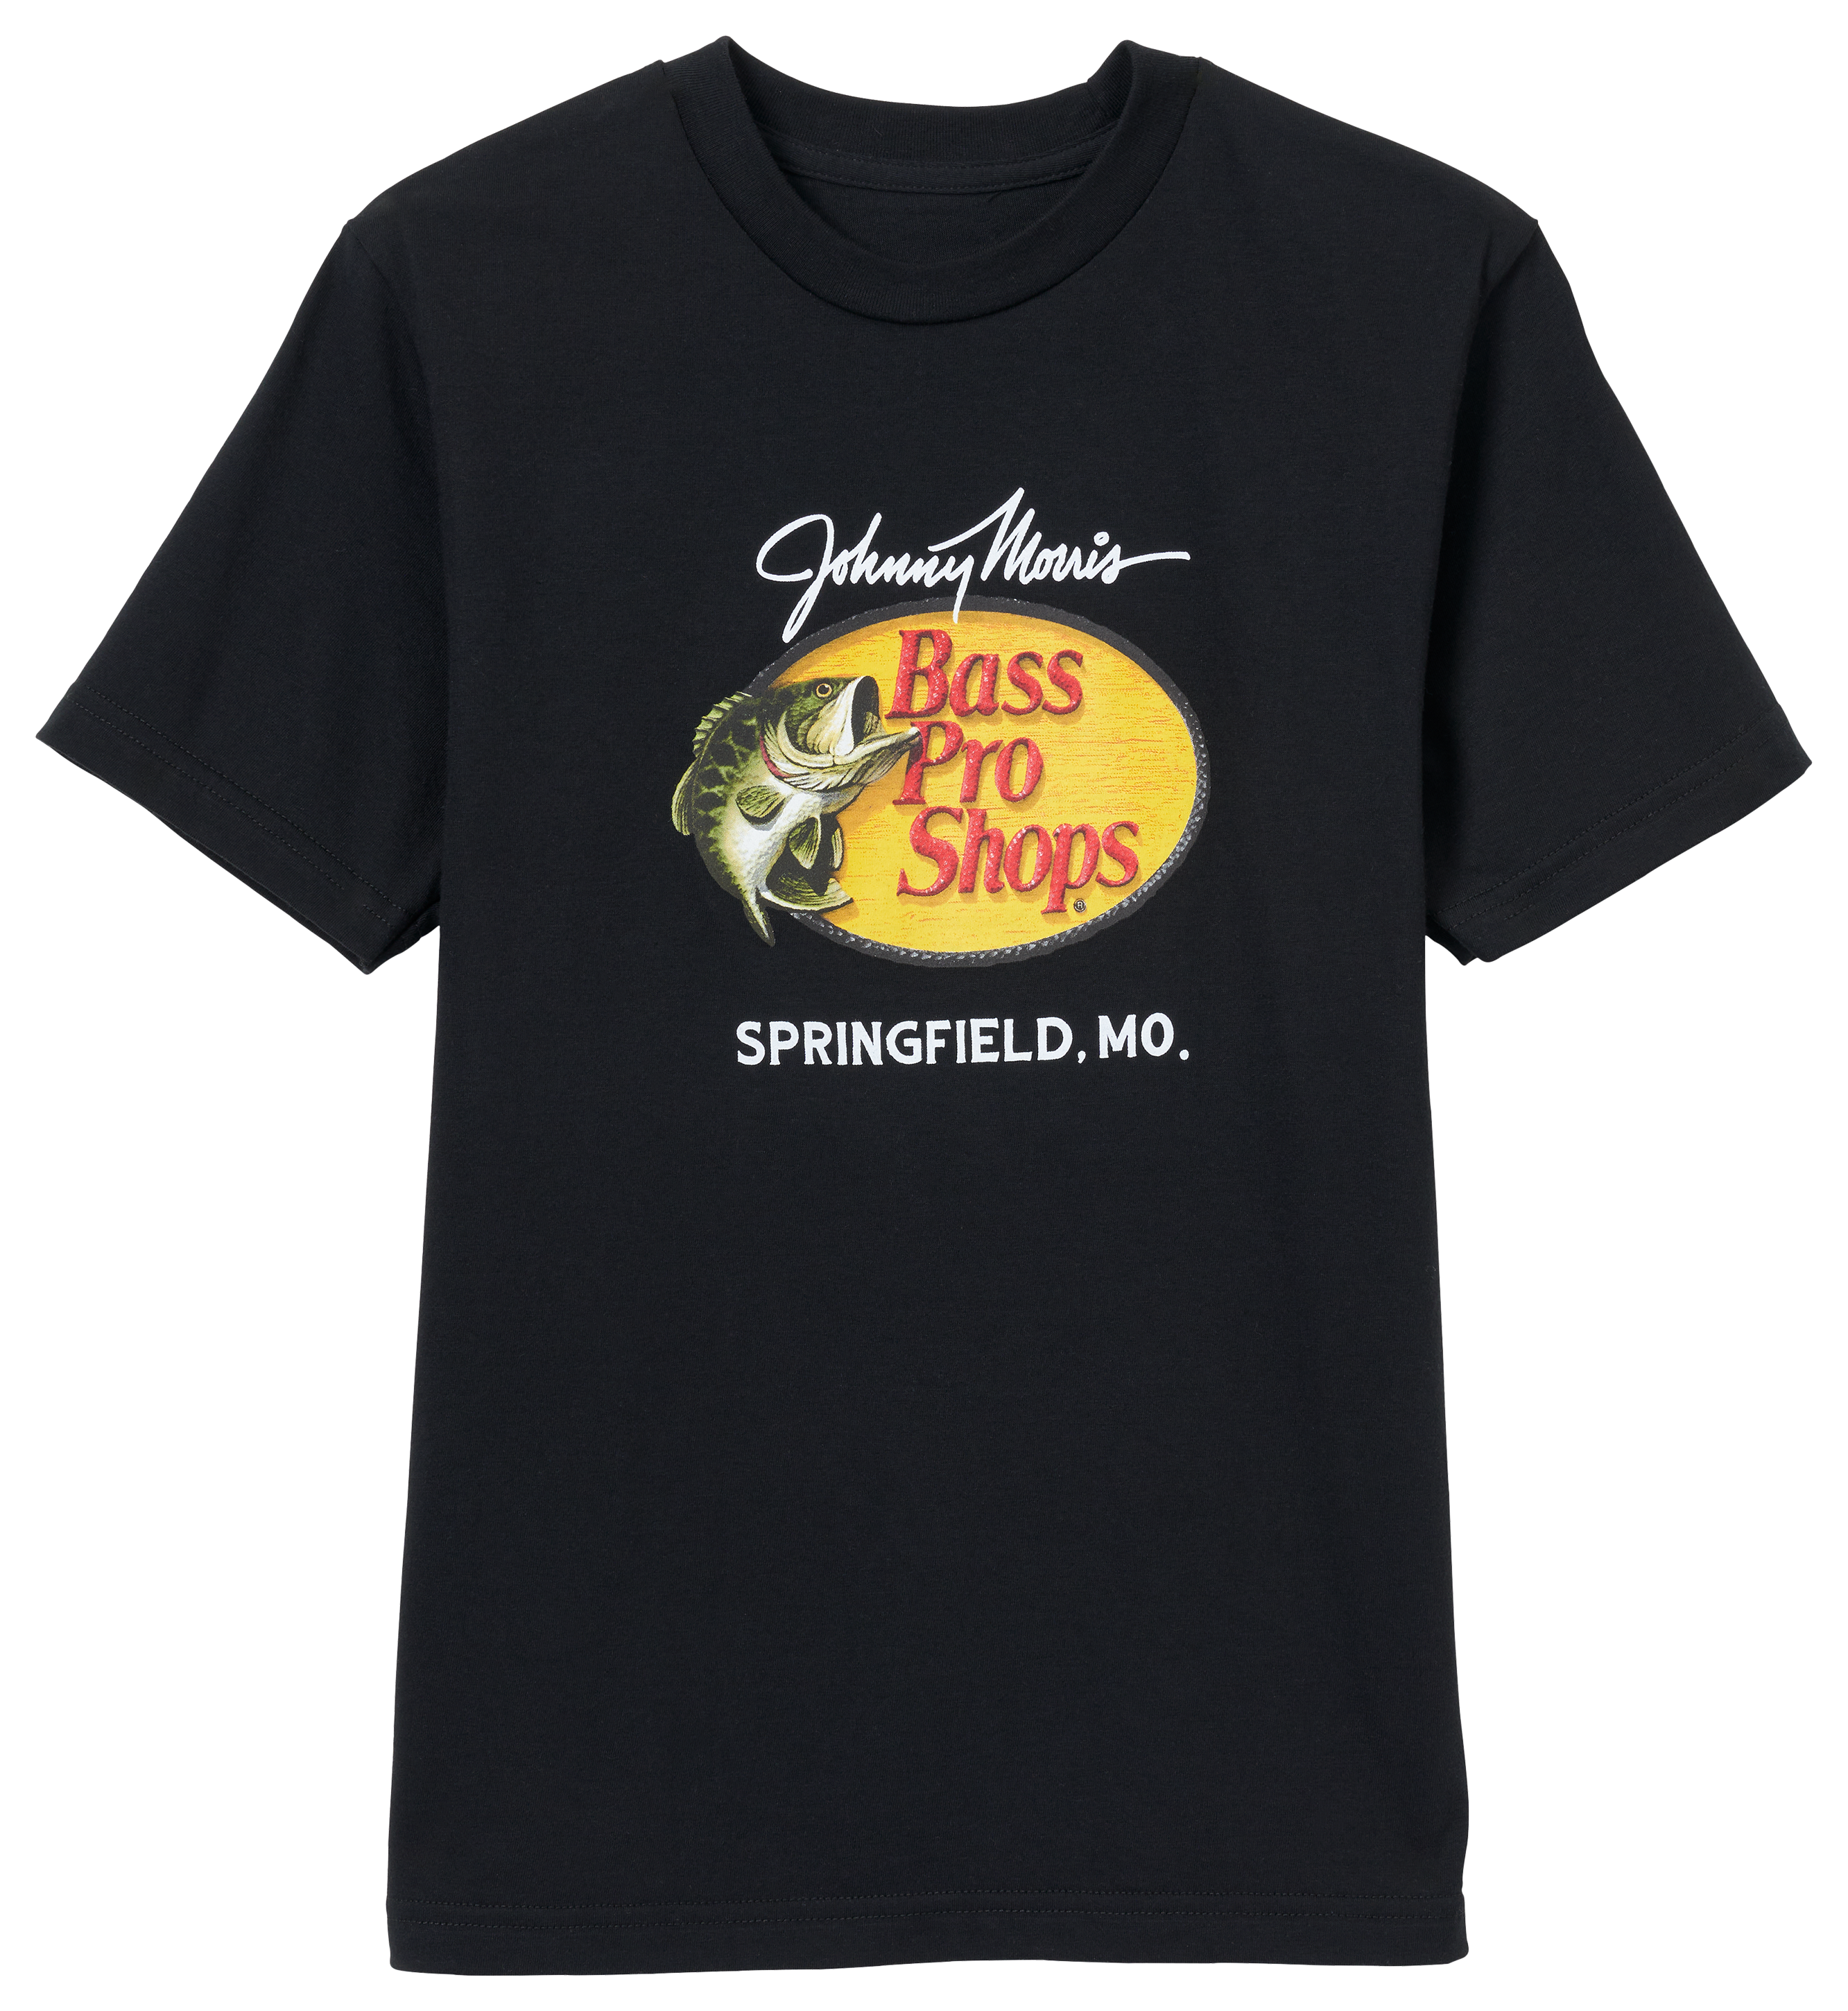 Bass Pro Shops Springfield Woodcut Logo Short-Sleeve T-Shirt for Kids